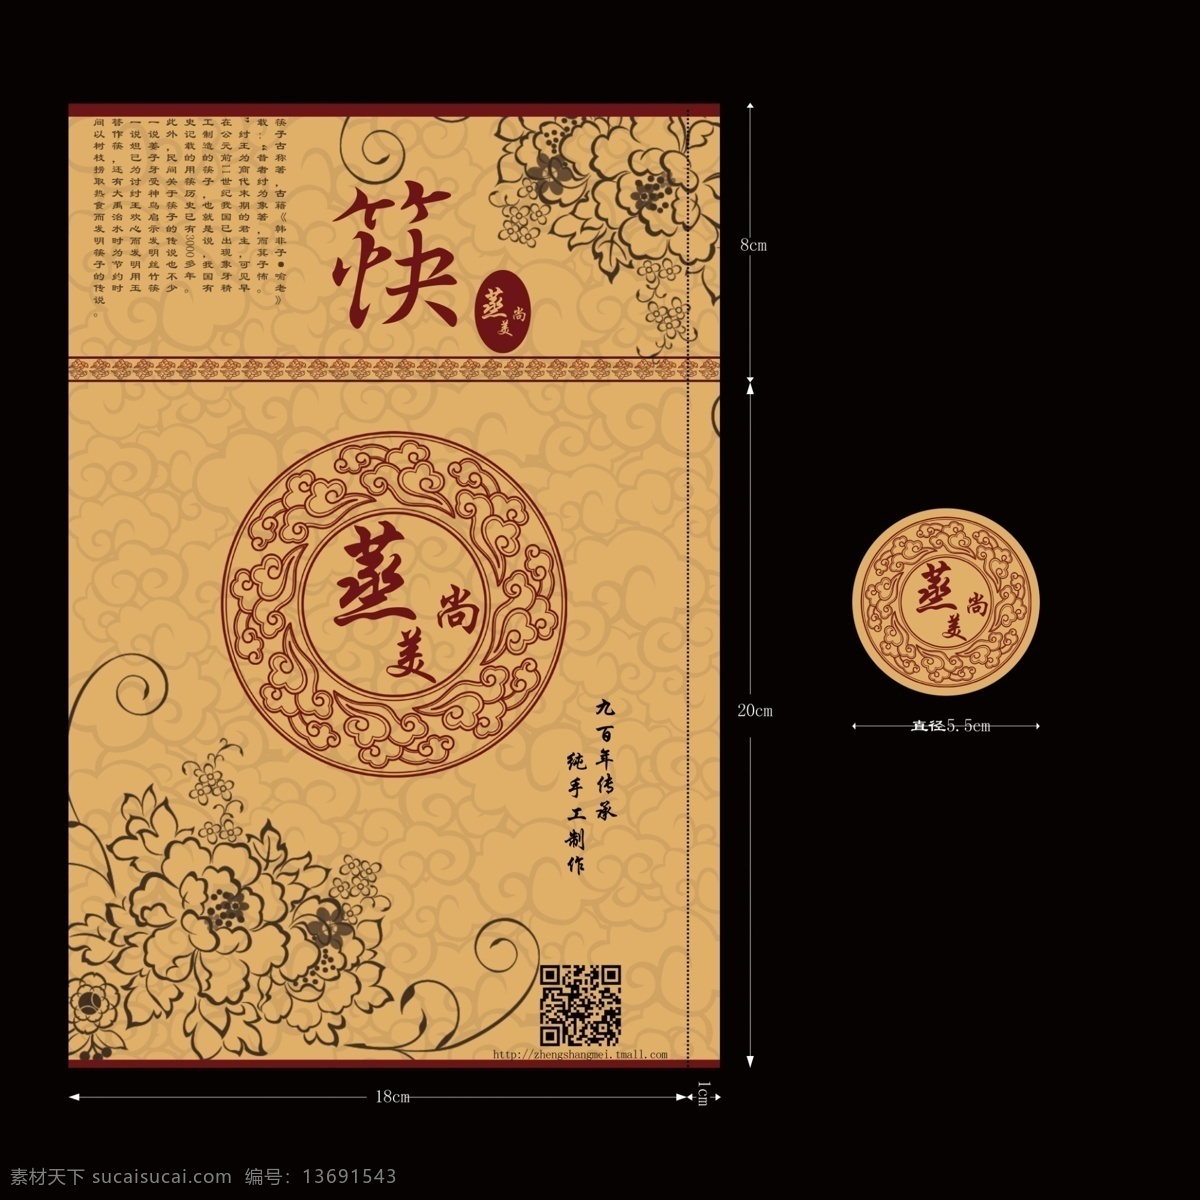 筷子 包装 筒 展开图 筷子包装筒 古风包装 原创设计 原创包装设计